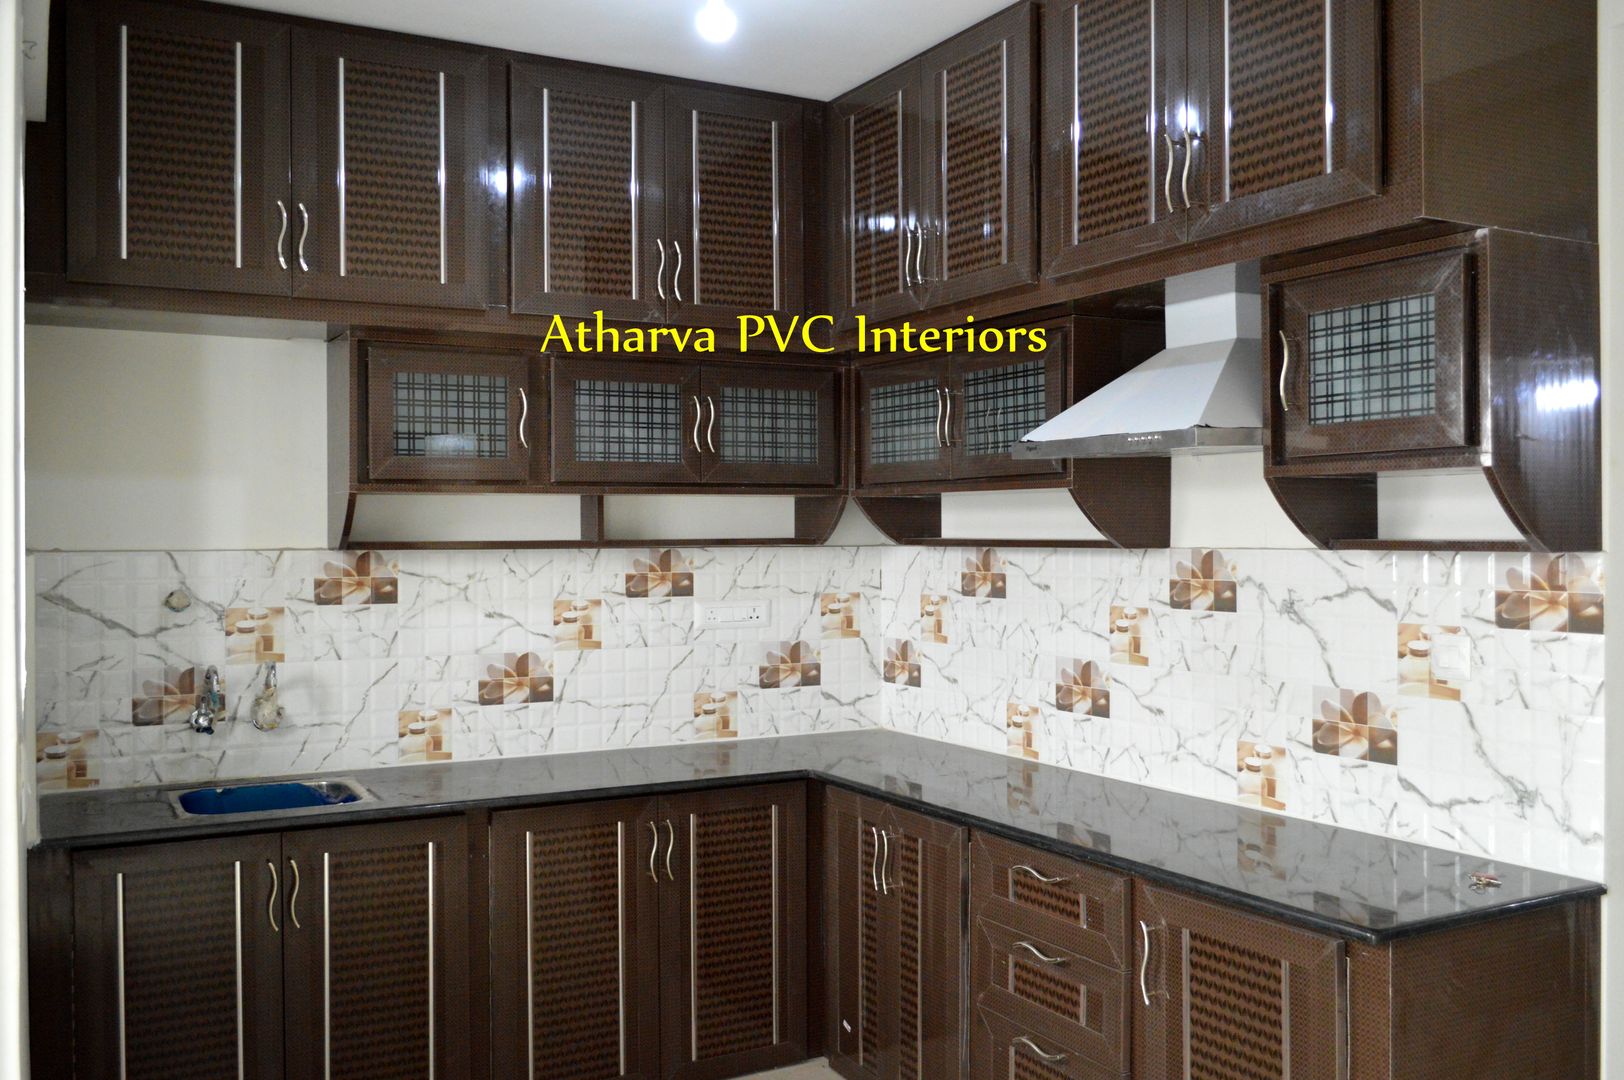 PVC Modular Kitchen cabinets, Atharva PVC Interiors Atharva PVC Interiors Dapur Modern Plastik Cabinets & shelves